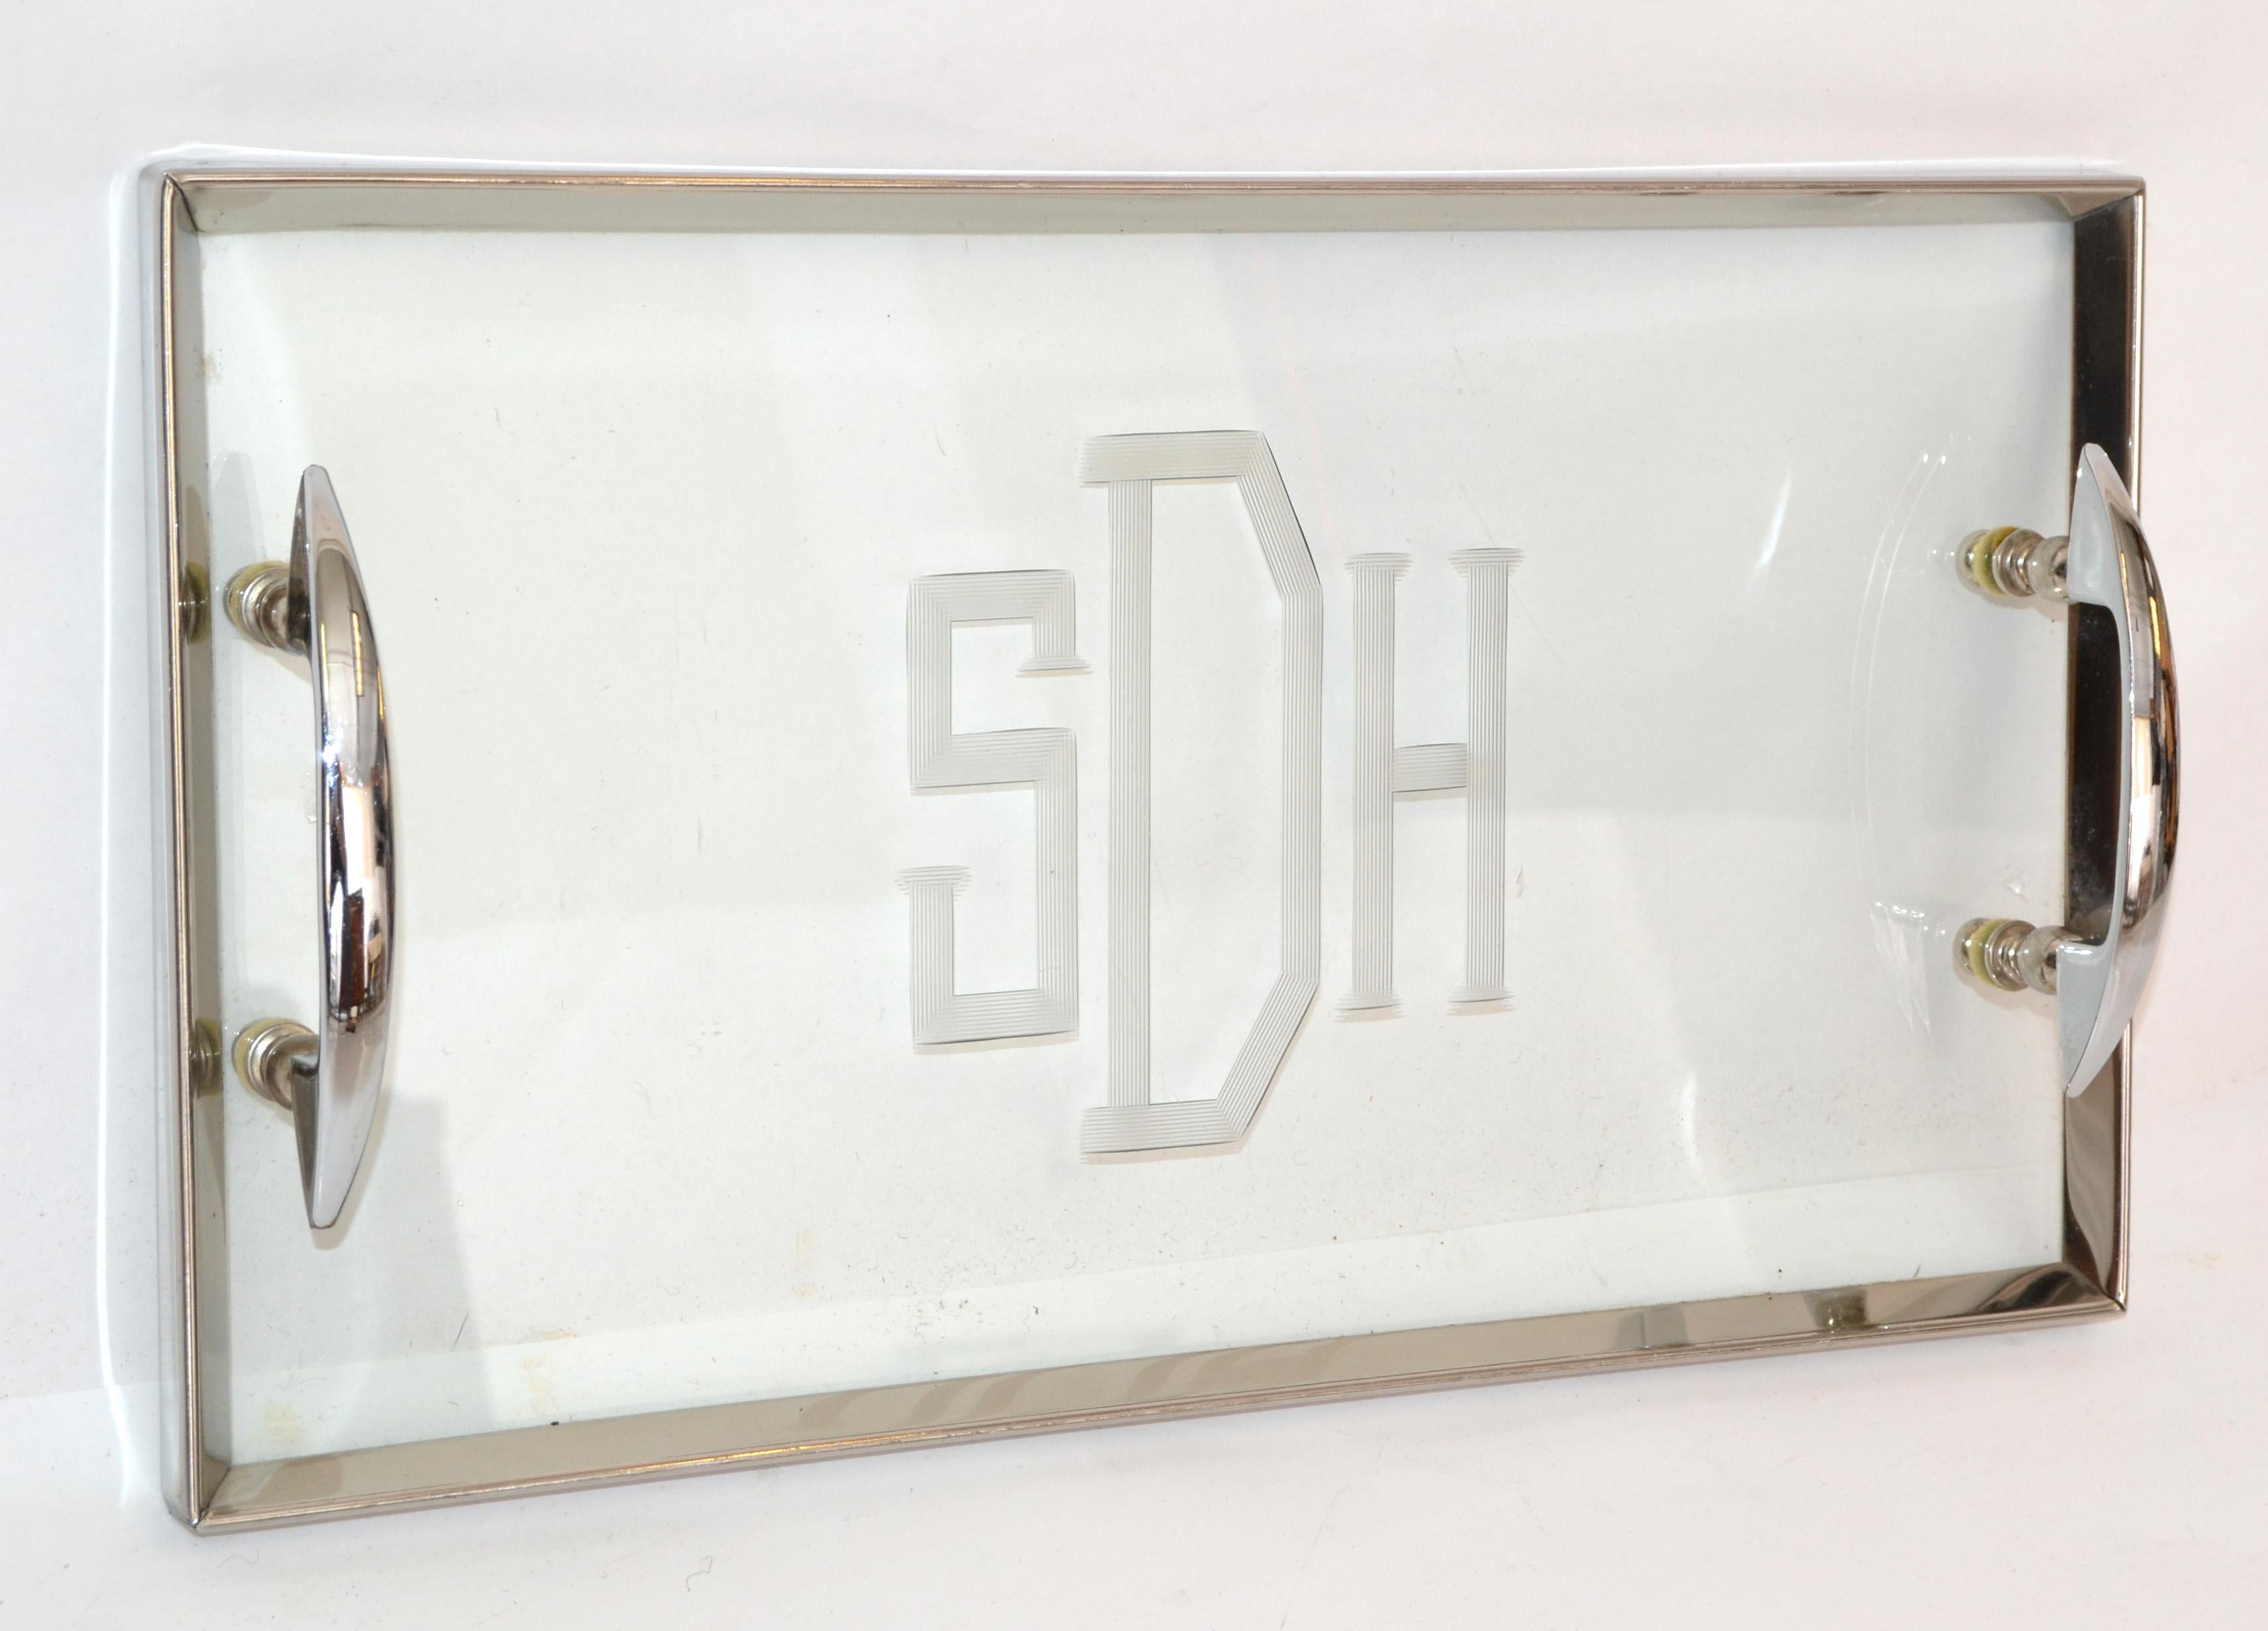 Französisches Art Deco Tablett oder Serviertablett aus Edelstahl mit geätztem Glas.
In der Mitte sind die Buchstaben SDH eingraviert.
Ideal für Getränke, Snacks oder auf dem Waschbecken für Parfüm. 

 